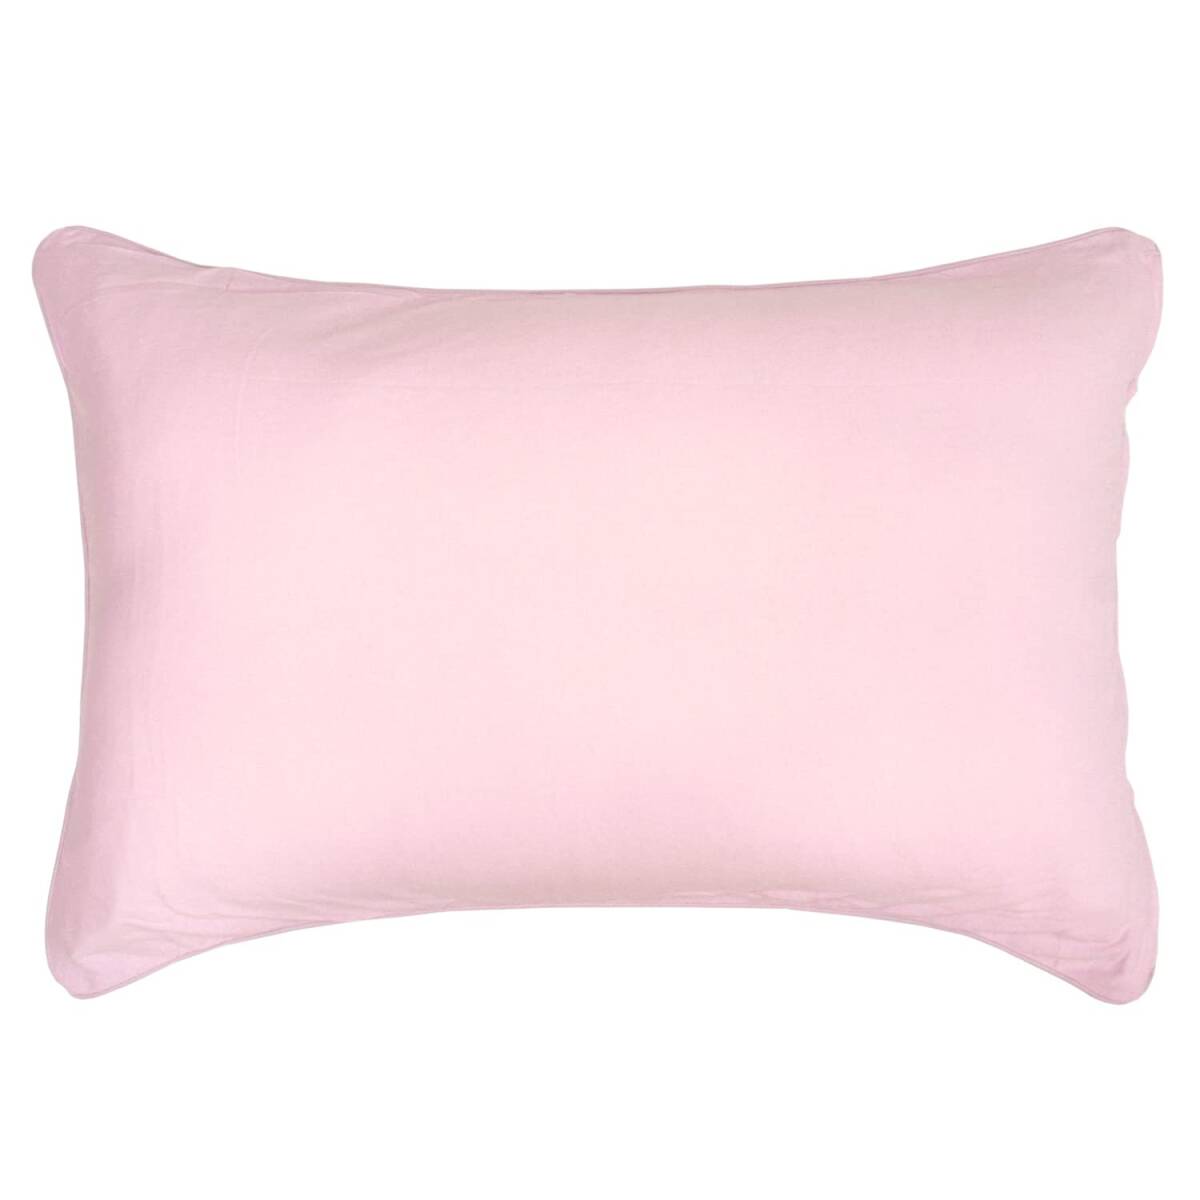 メリーナイト 枕カバー 無地カラー ピンク 約43×63cm ファスナー式 まくらが入れやすい 綿100% ニット素材 ピタッと装着 洗える オ_画像1